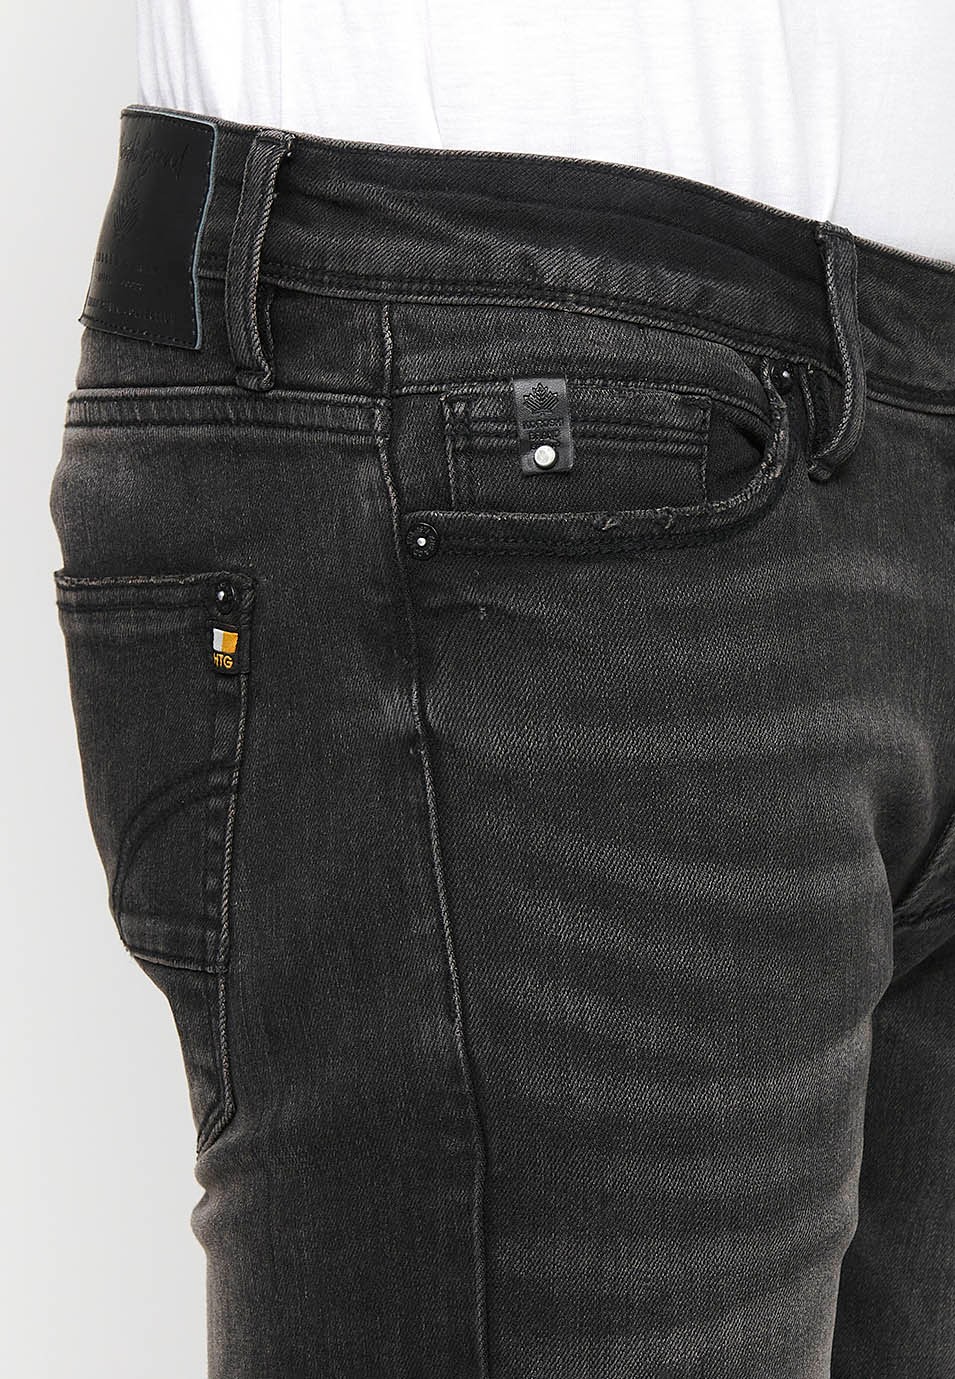 Pantalons texans llarg straigth regular fit amb Tancament davanter amb cremallera i botó de Color Denim Negre per a Home 5